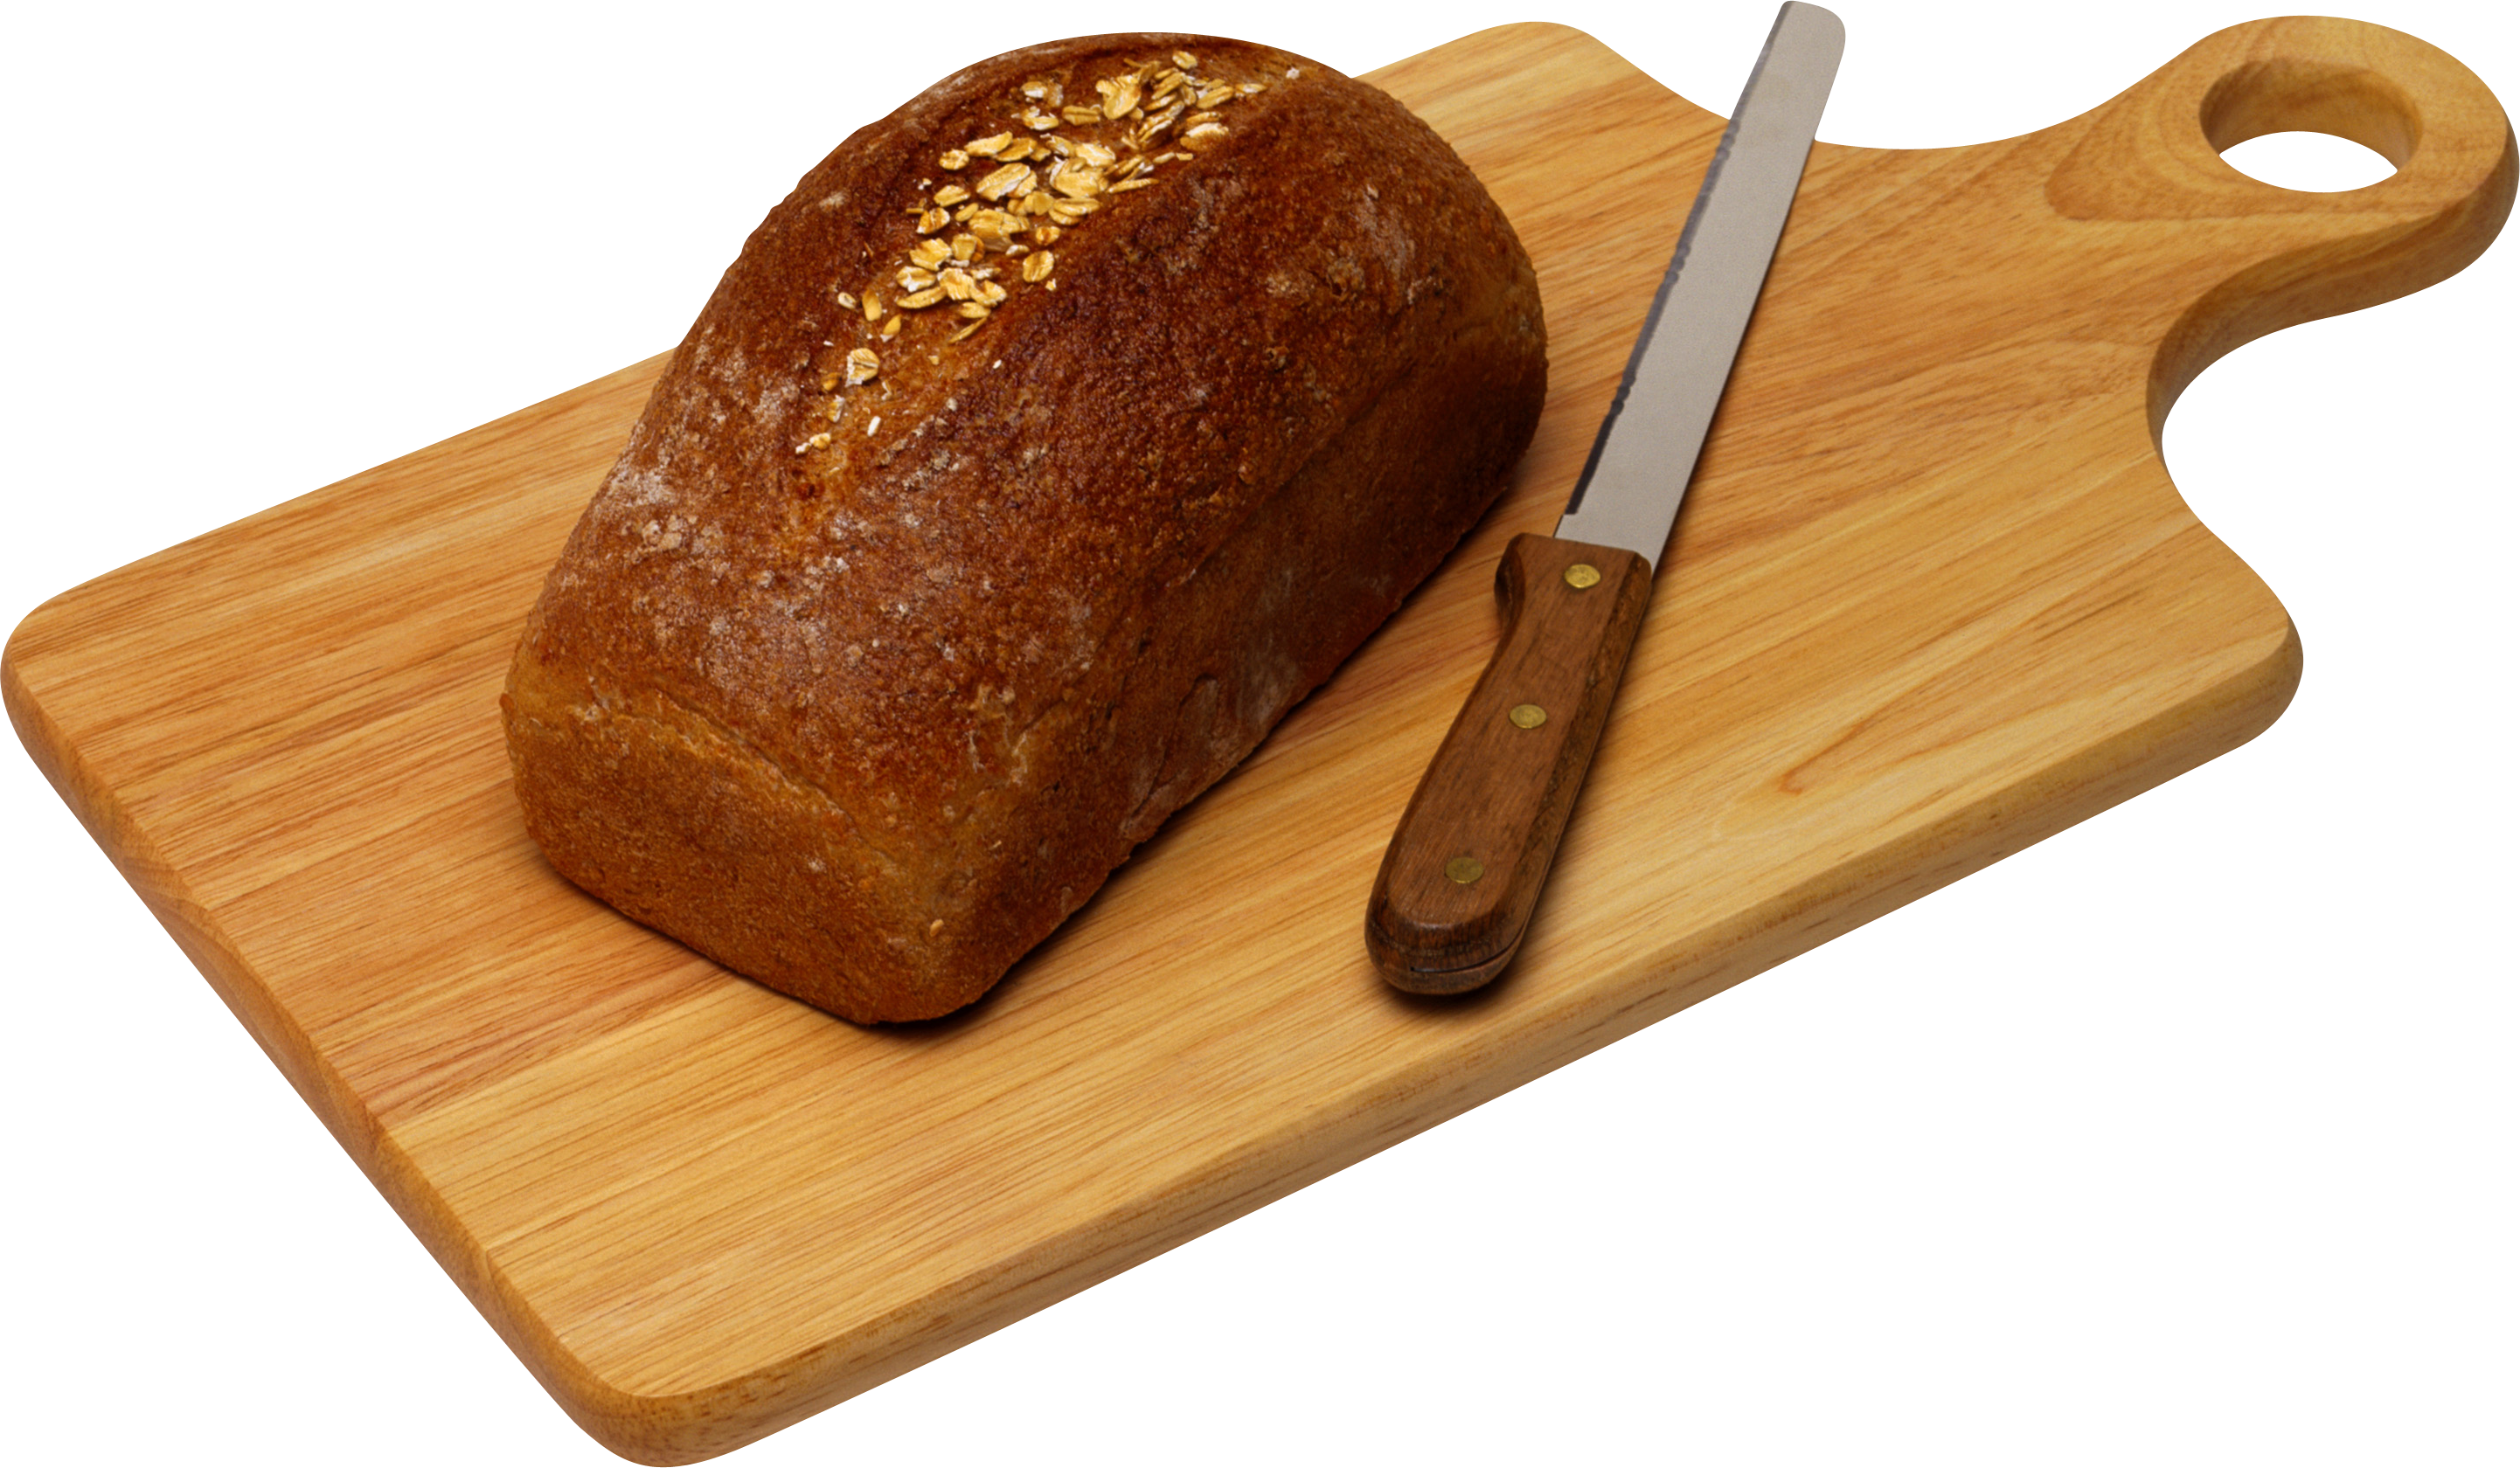 Bánh mì mè